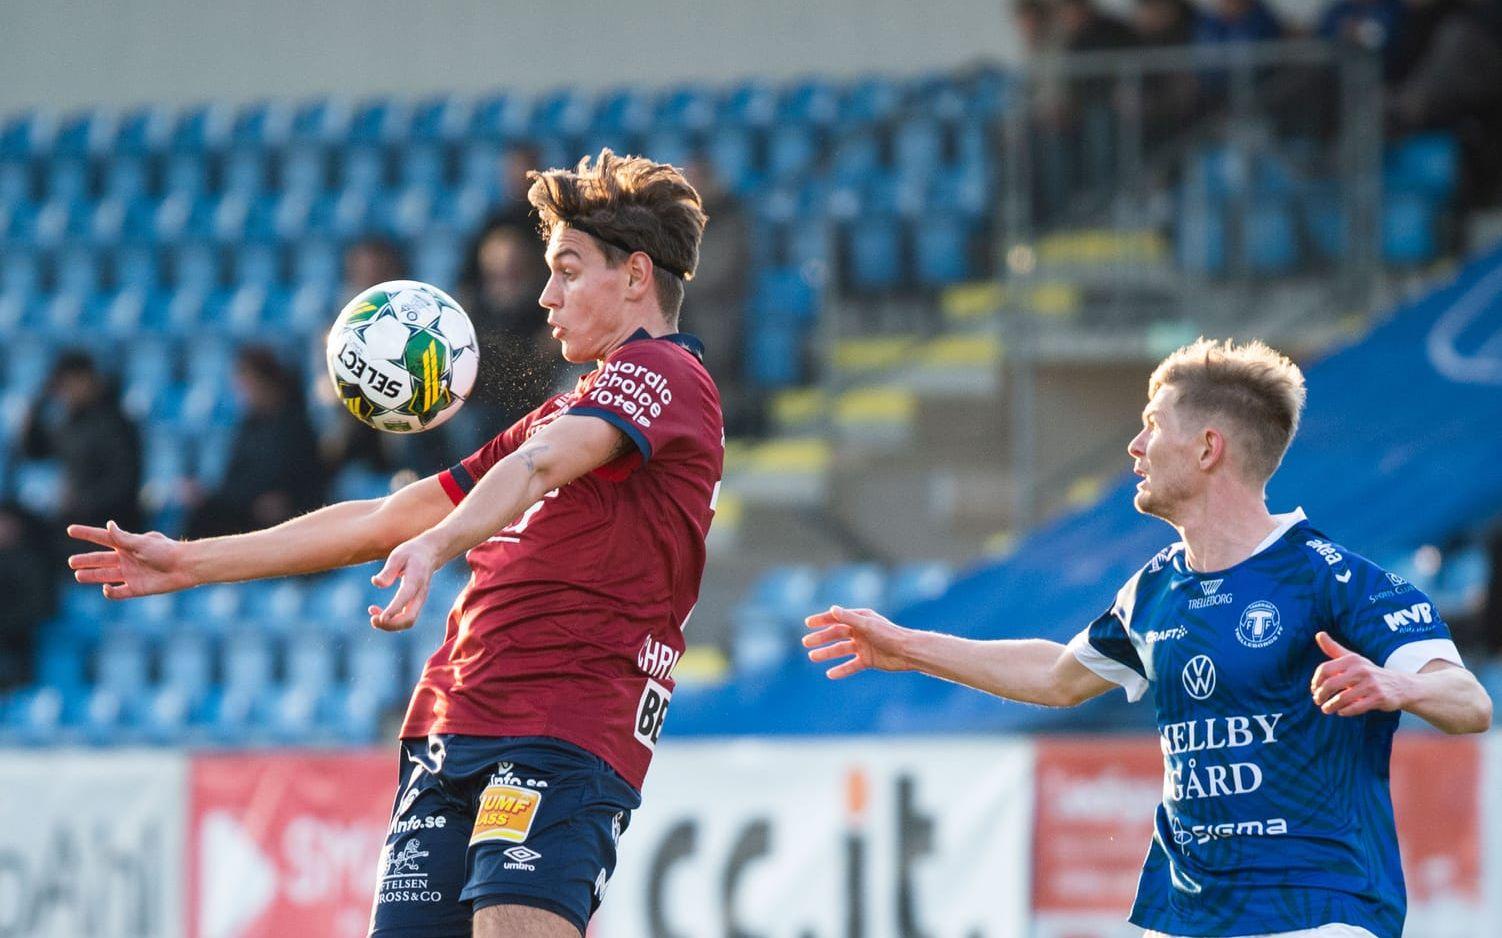 Tung 0–2-förlust för Örgryte mot Trelleborg.